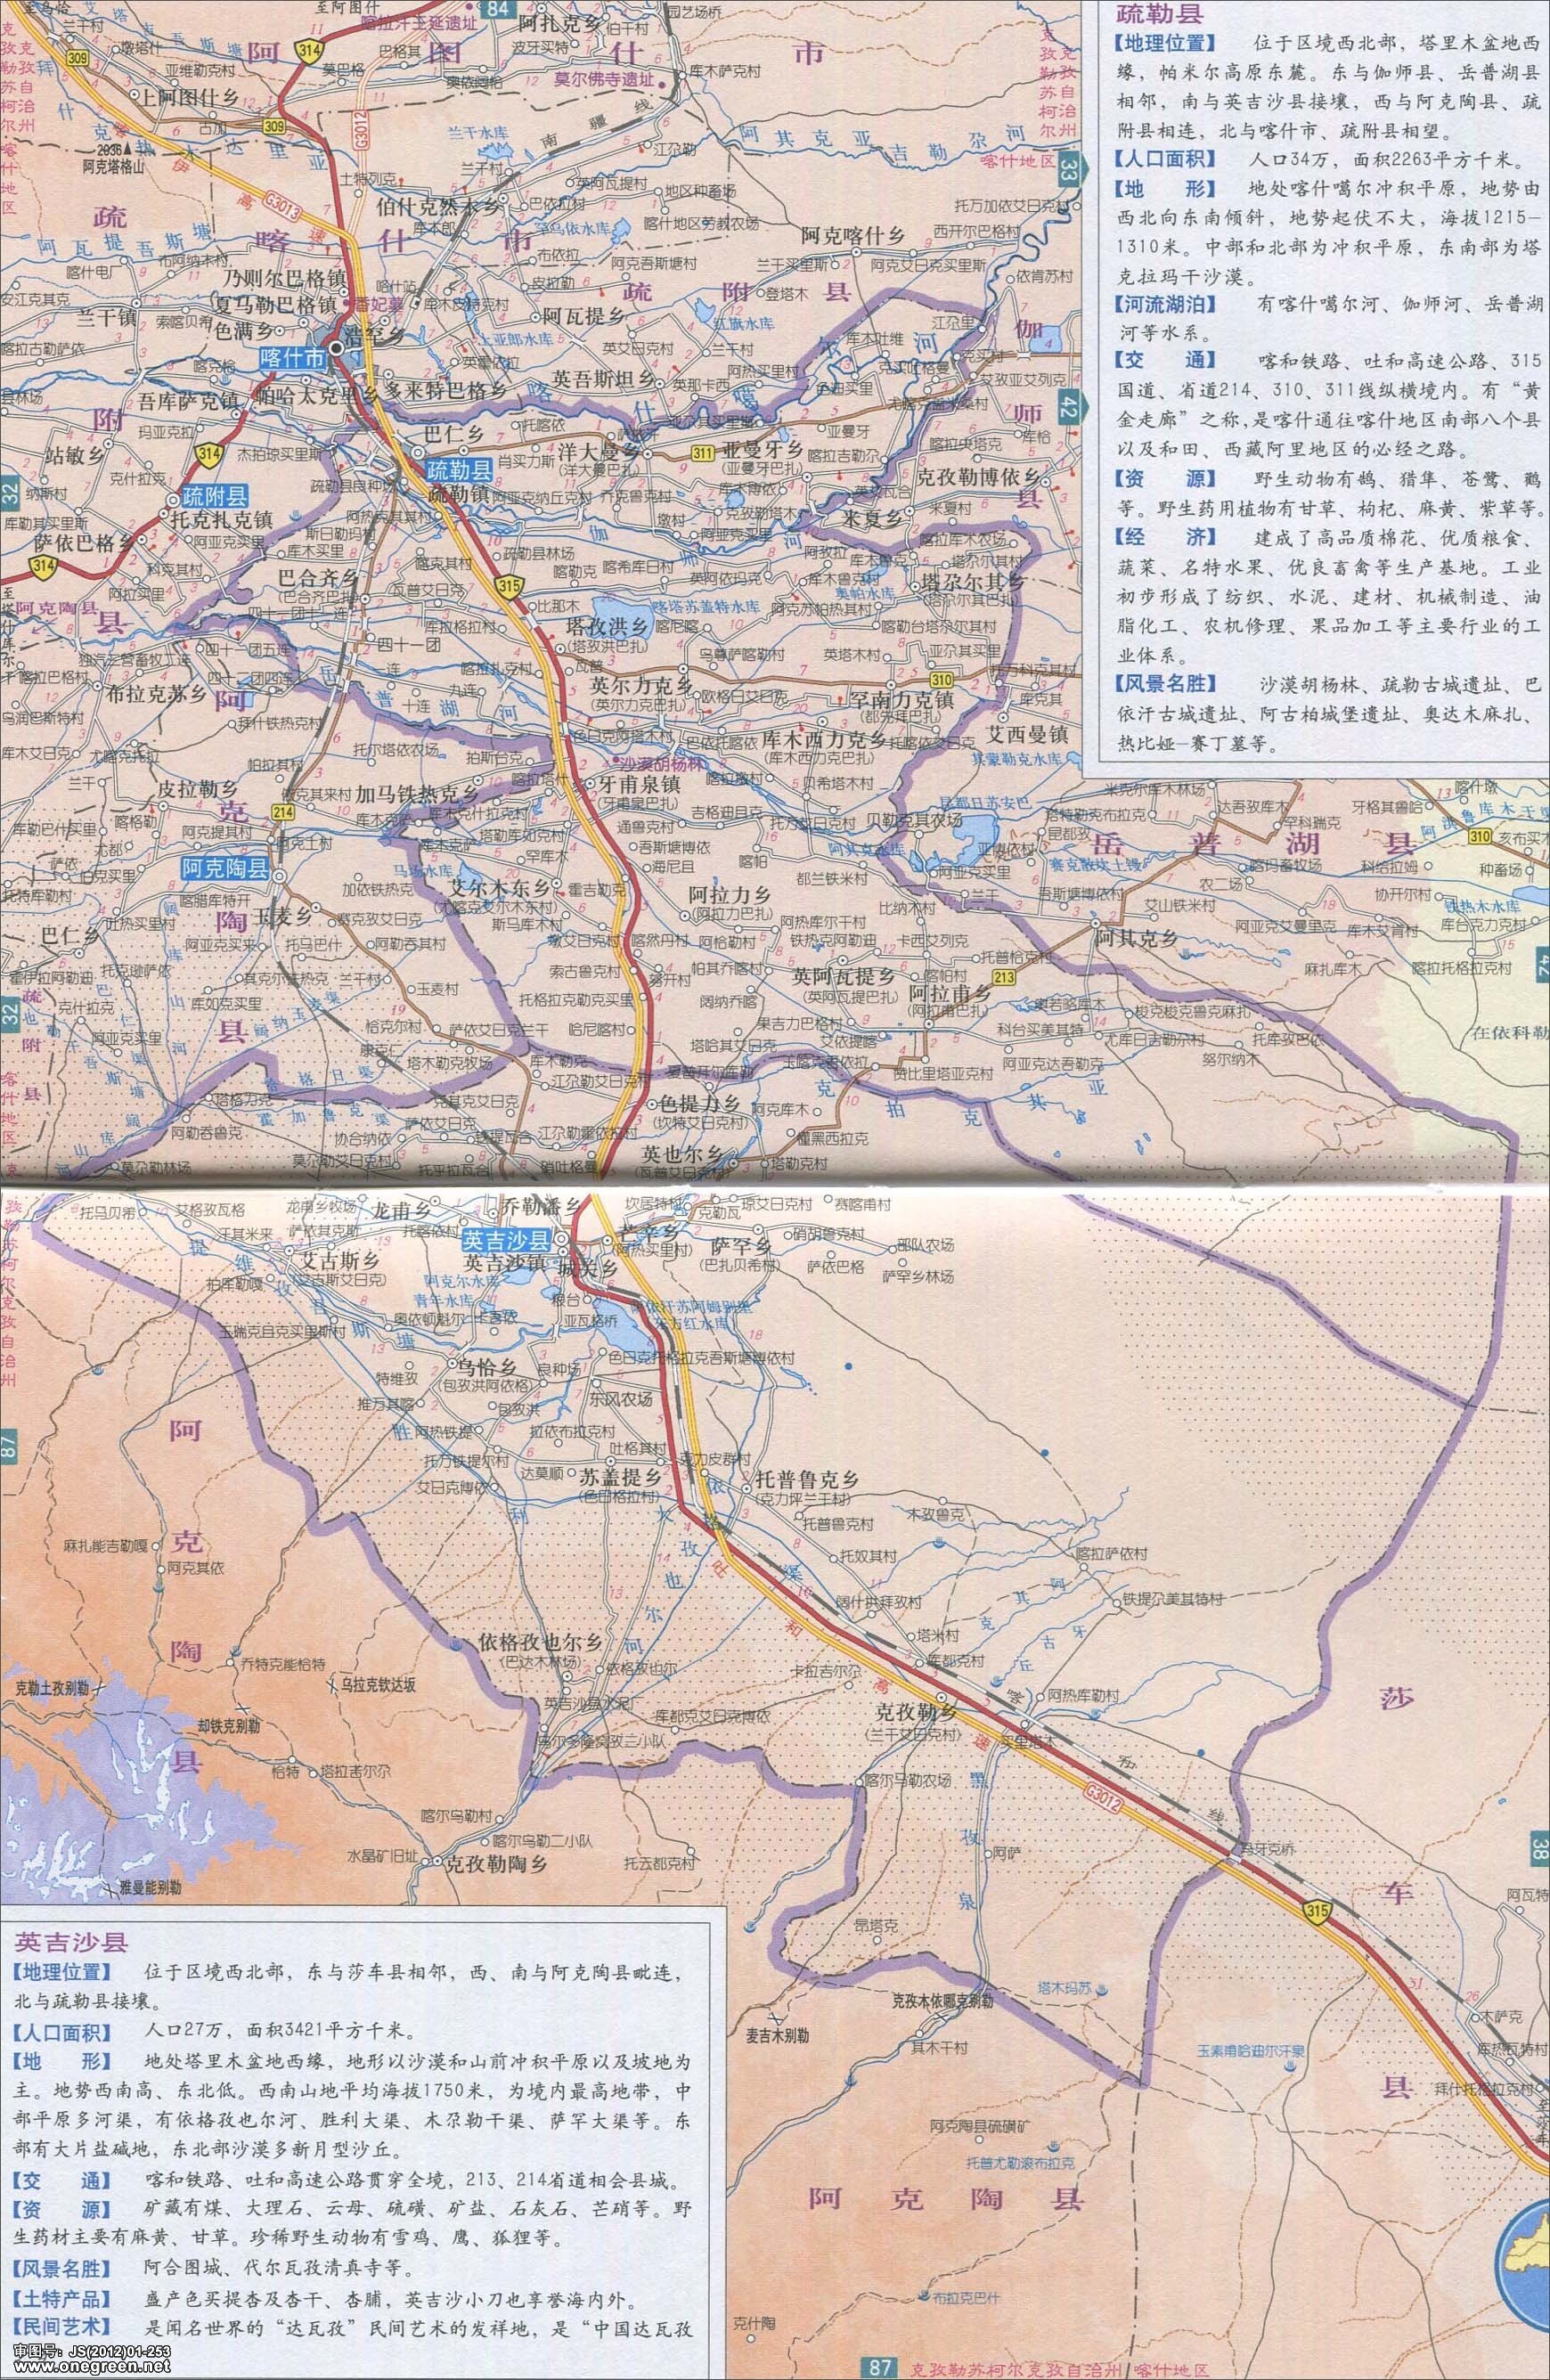 分类: 喀什 上一张地图: 莎车县泽普县地图  | 喀什 |  下一张地图